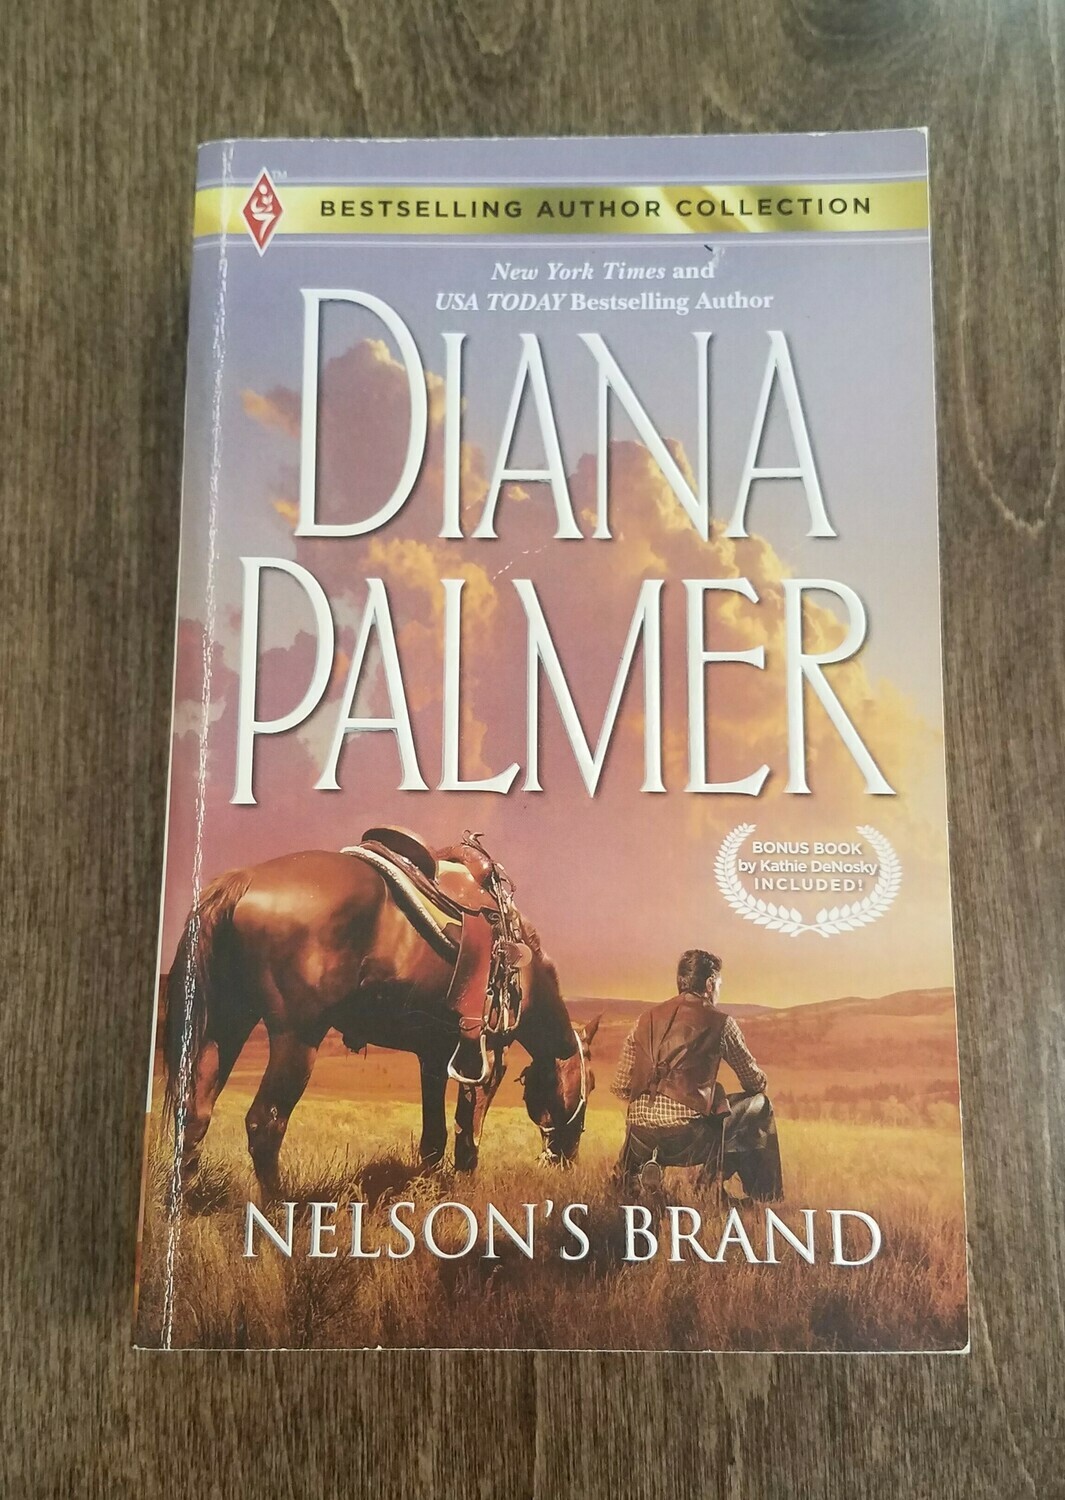 Nelson's Brand by Diana Palmer